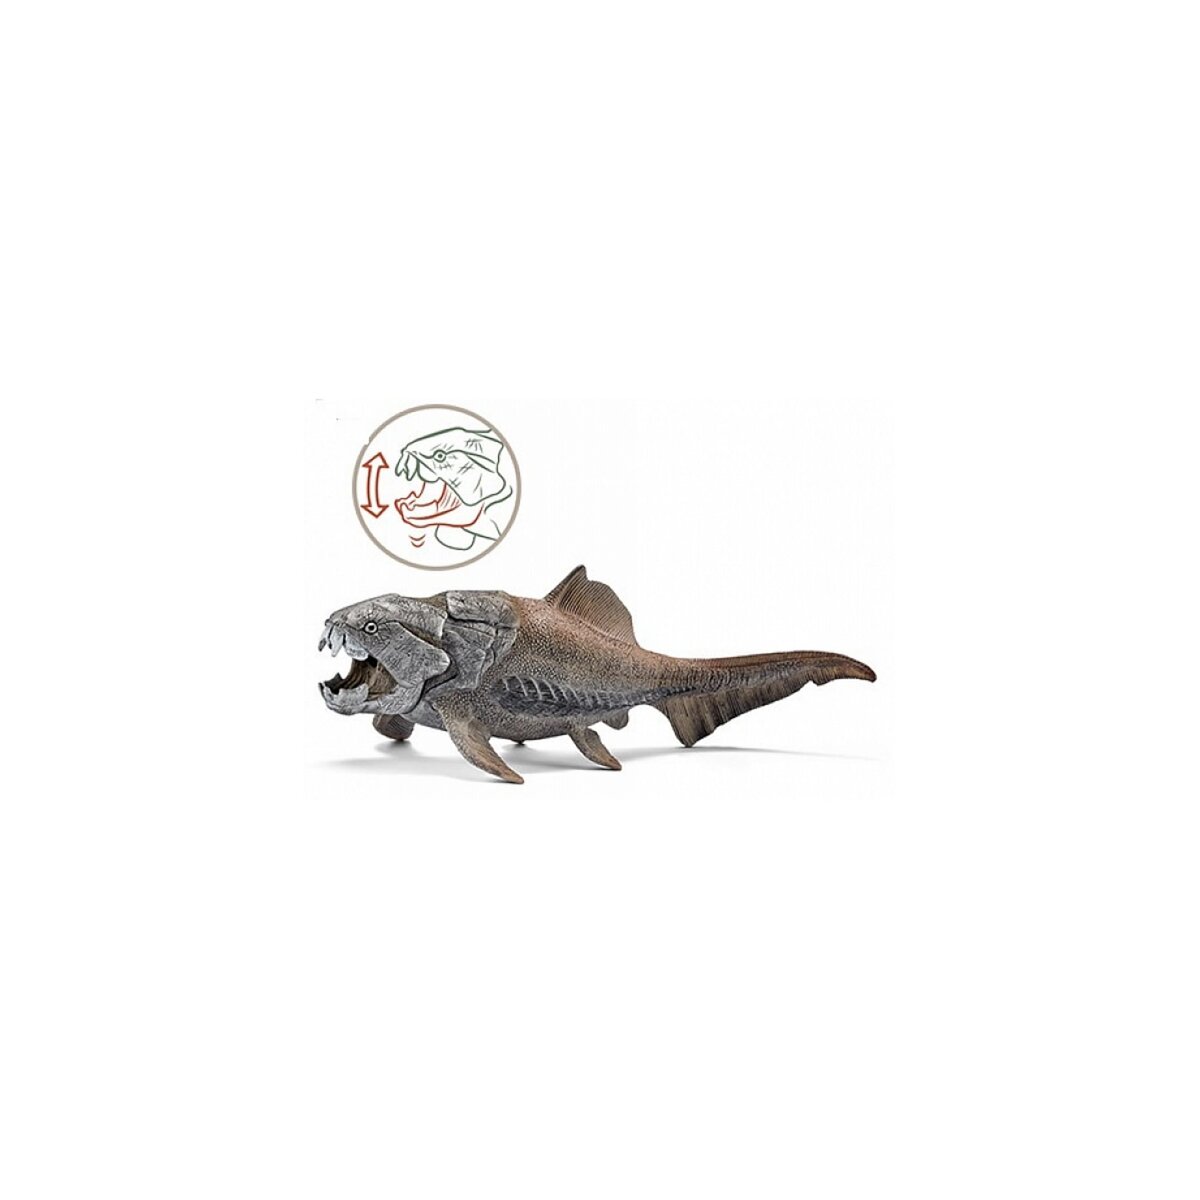 Schleich 14575 Figurine Dinosaure Dunkleosteus